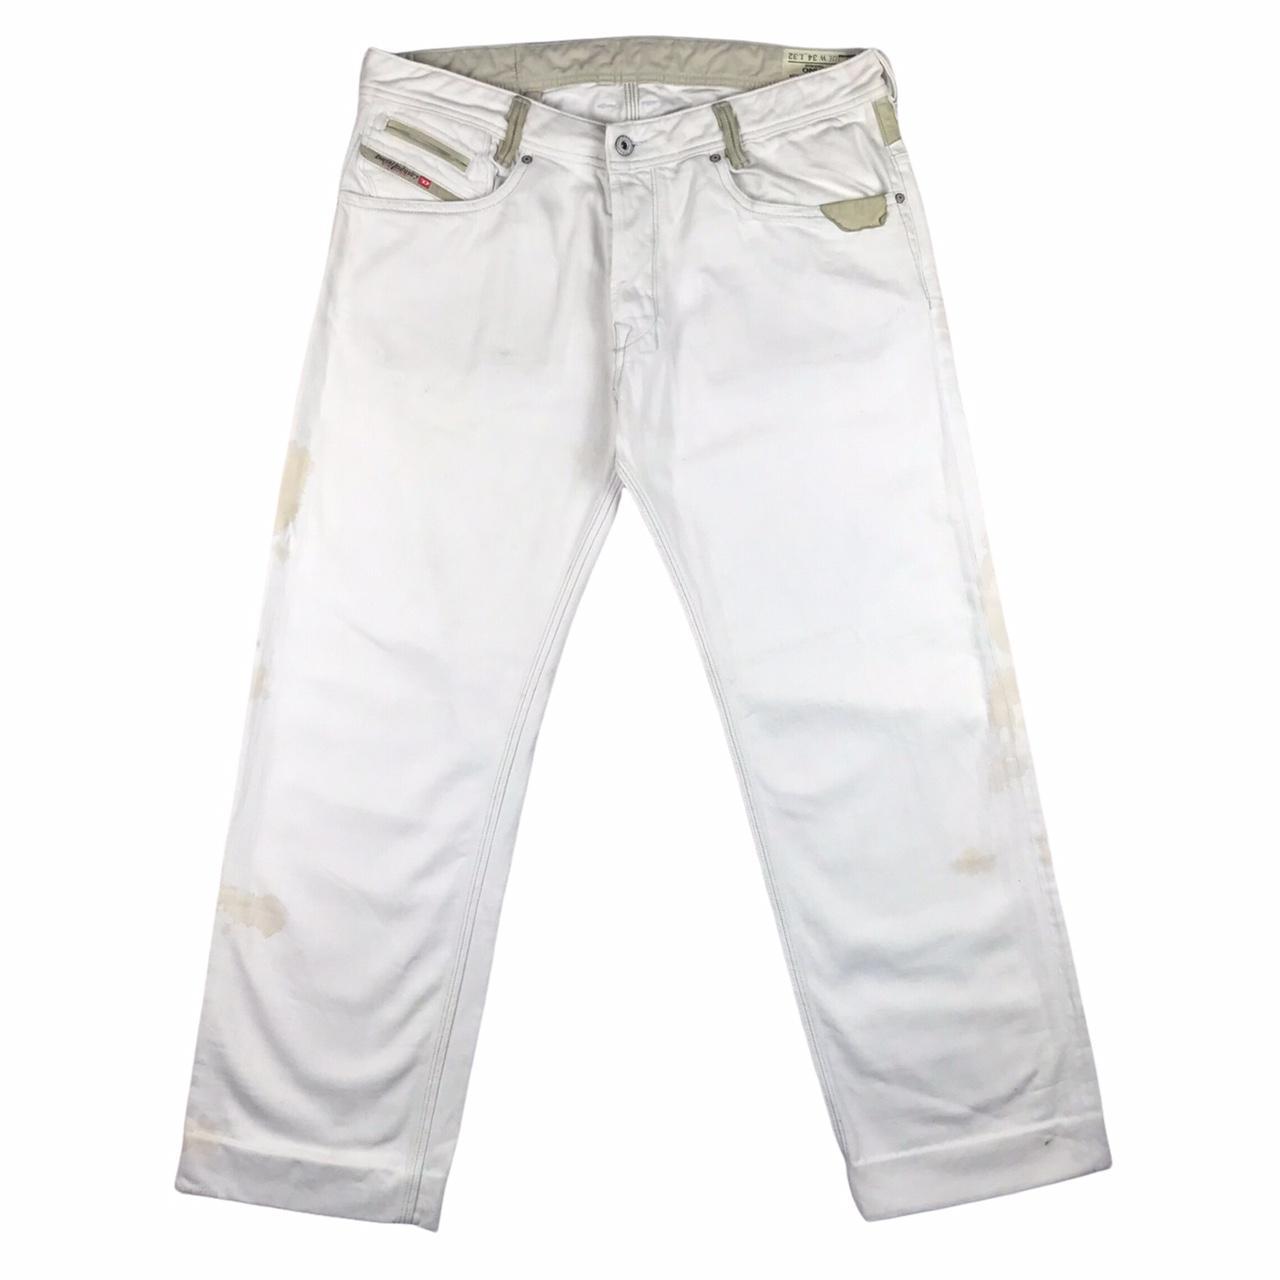 DIESEL Mens Onijo Slim Jeans W34 L28 White Cotton... - Depop